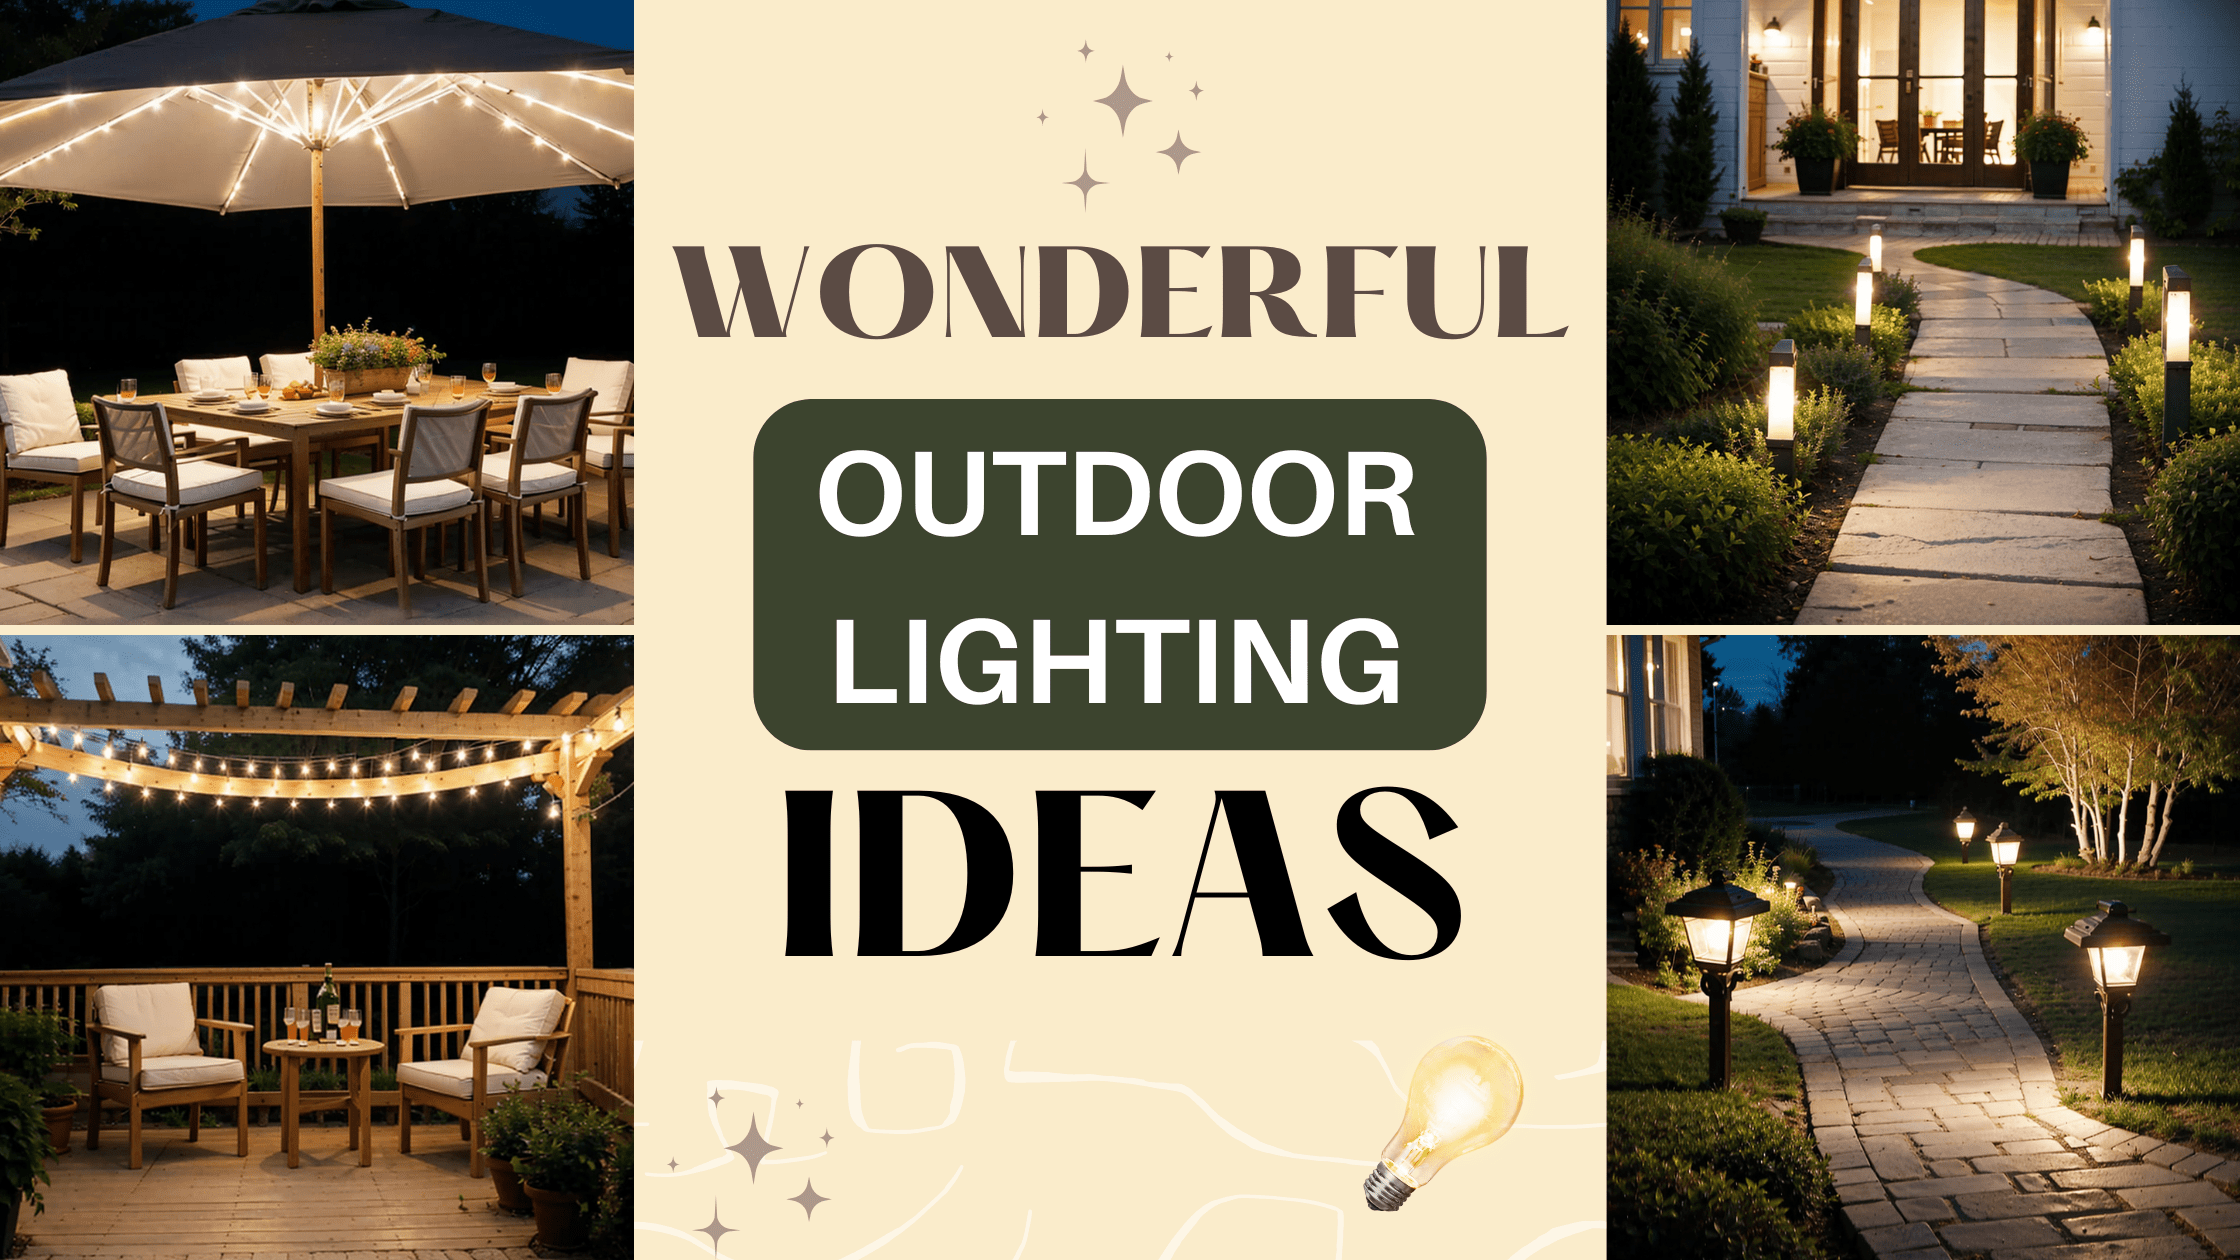 Outdoor lightning ideas